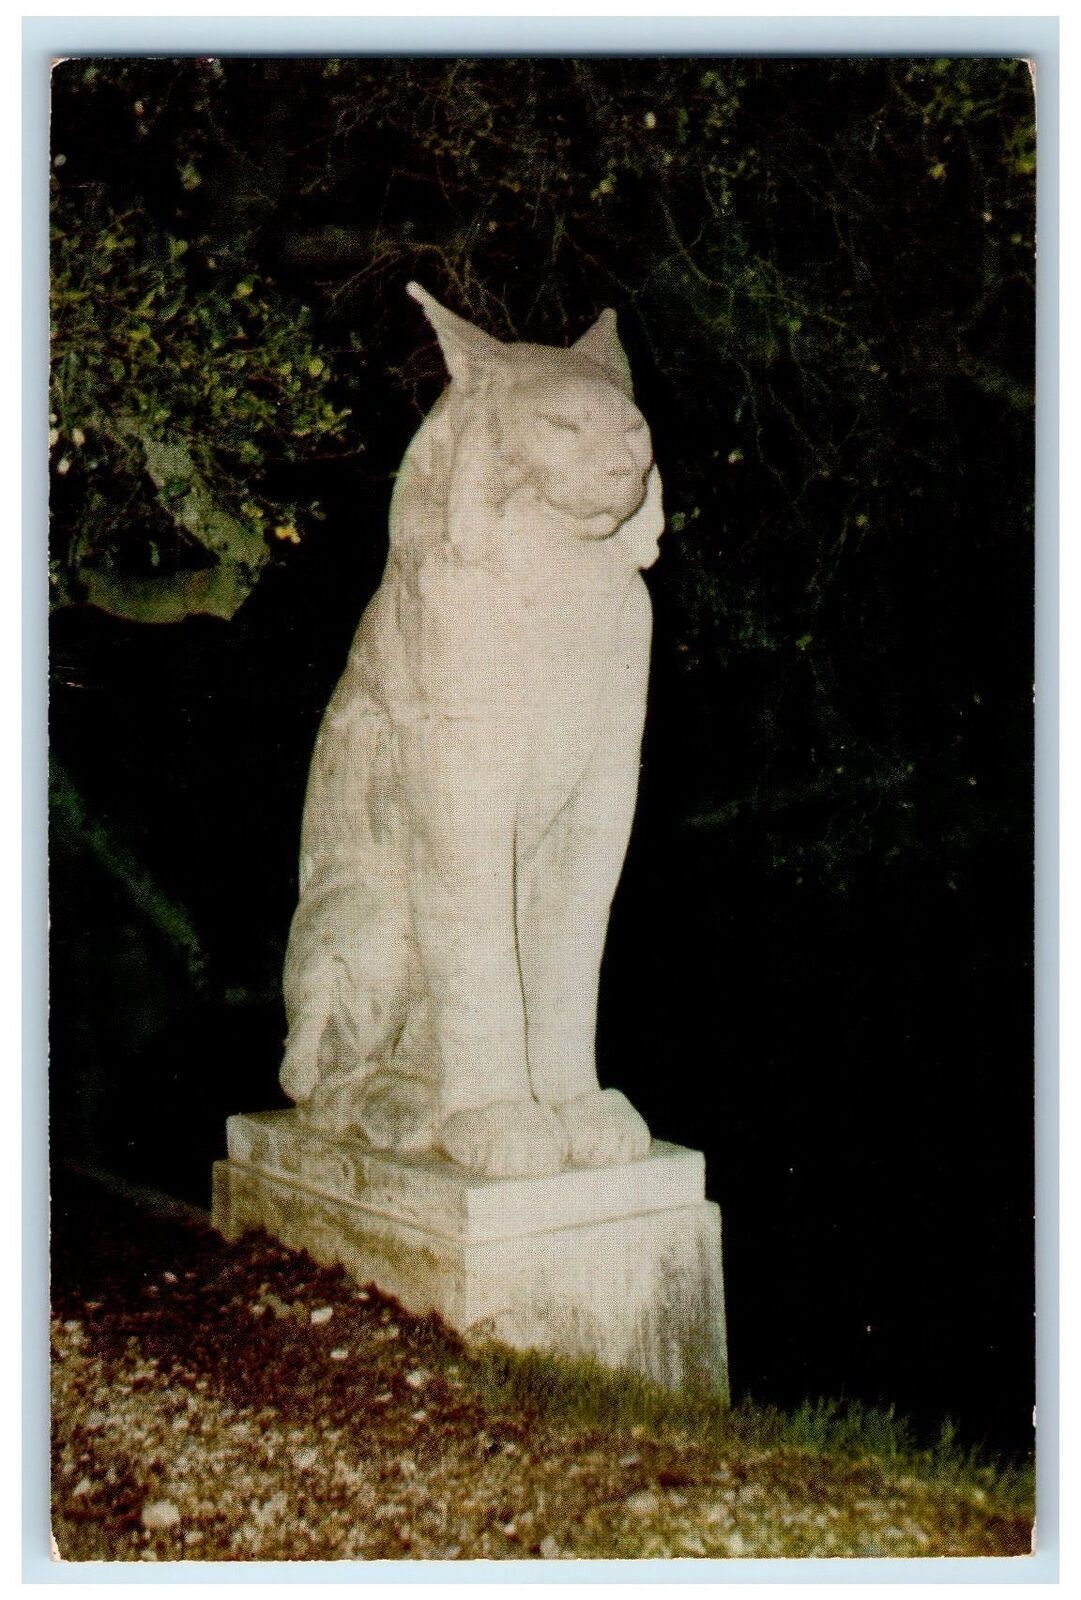 c1950's Los Gatos Wild Cat Sculpture Statue Monument California CA  Postcard